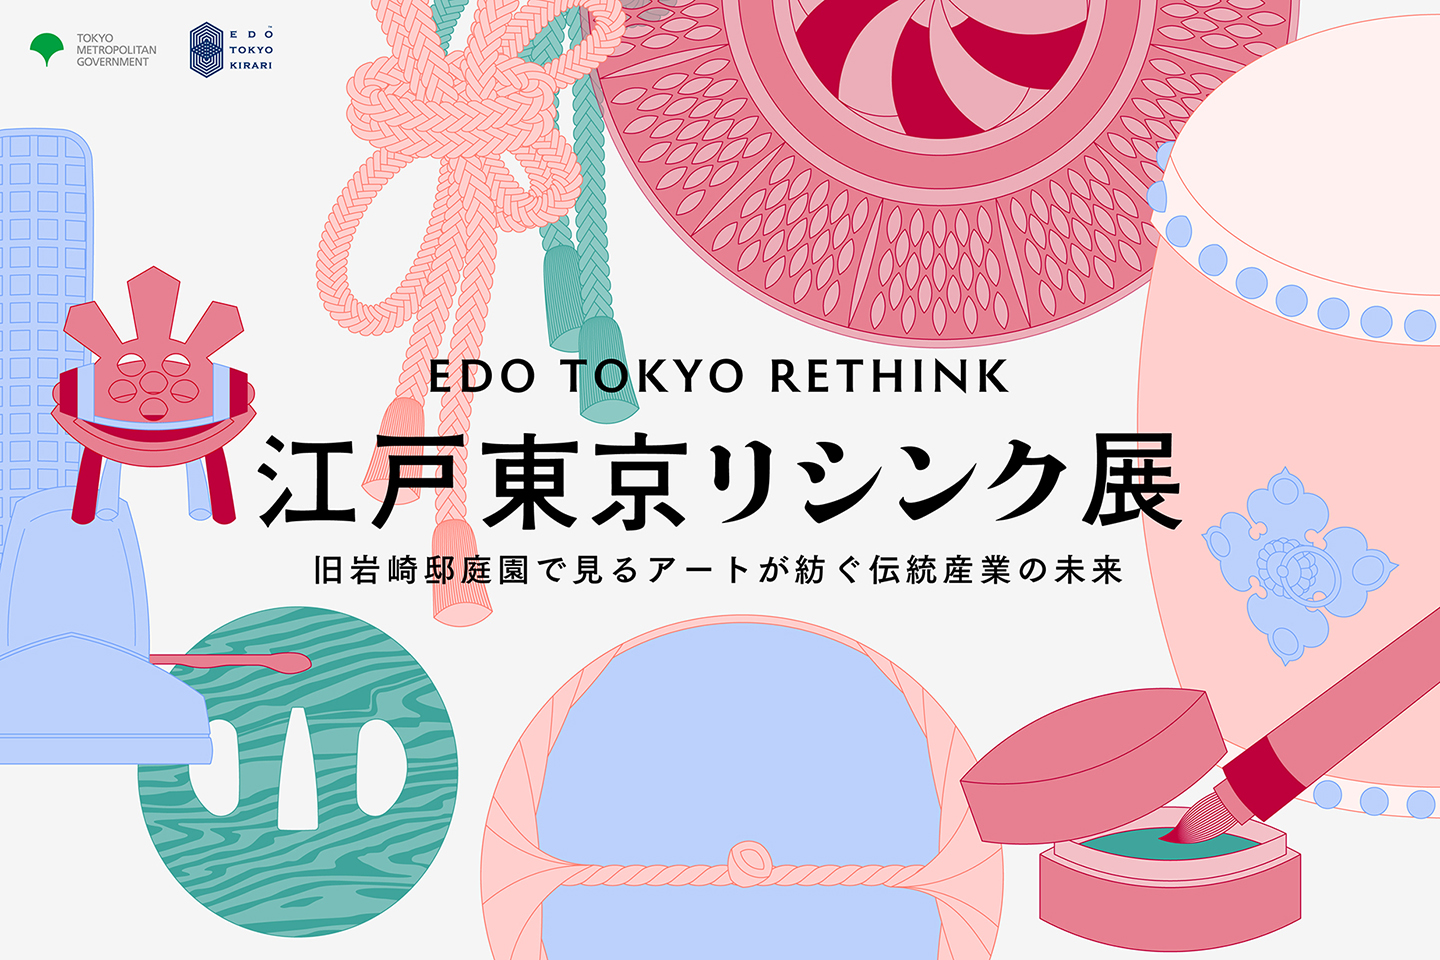 【江戸東京リシンク展】オンライン展覧会のスペシャルサイトが公開されました